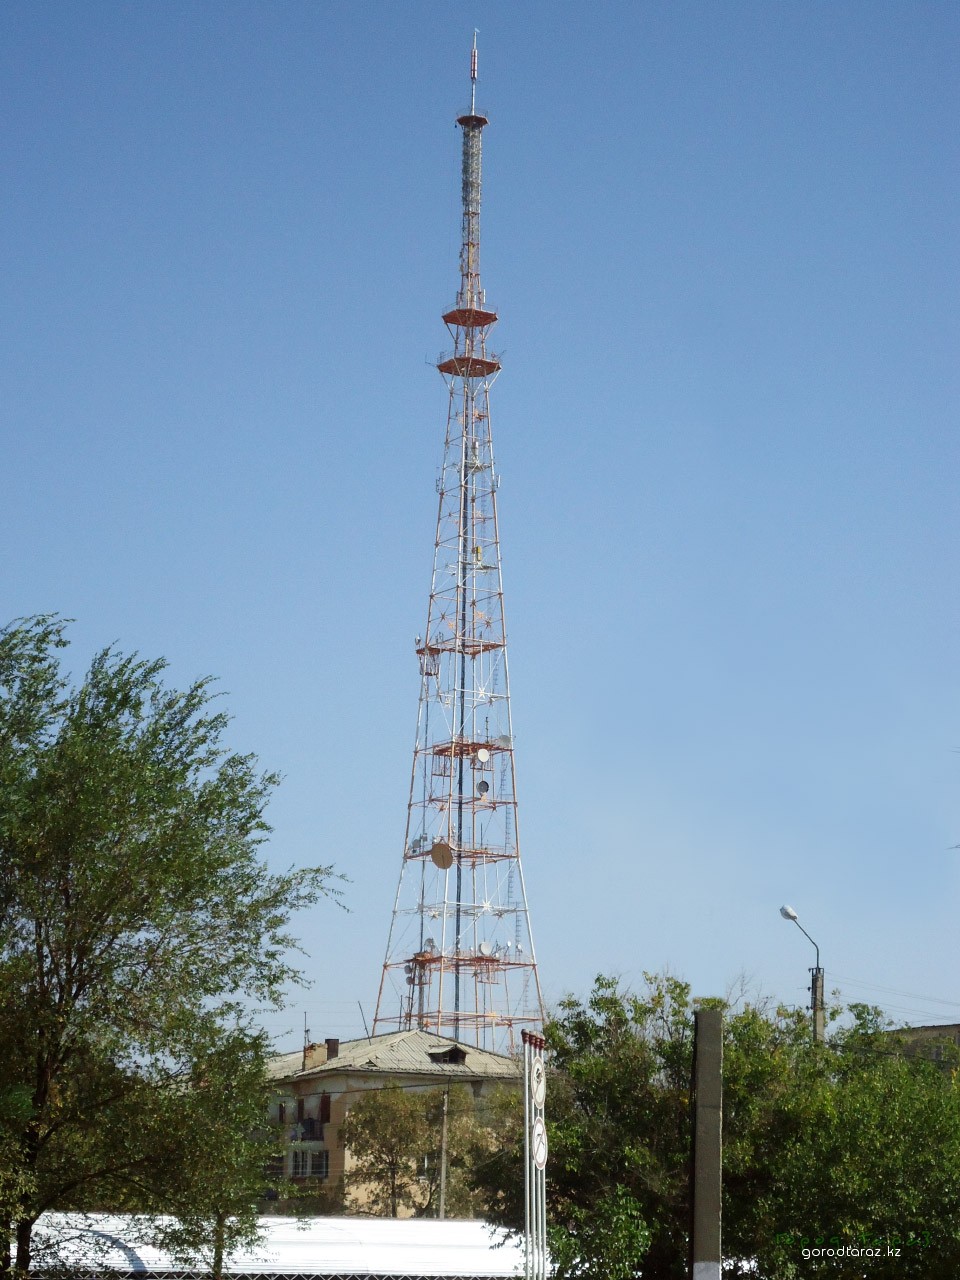 Жамбылская областная дирекция радиотелевещания - филиал АО “Казтелерадио”